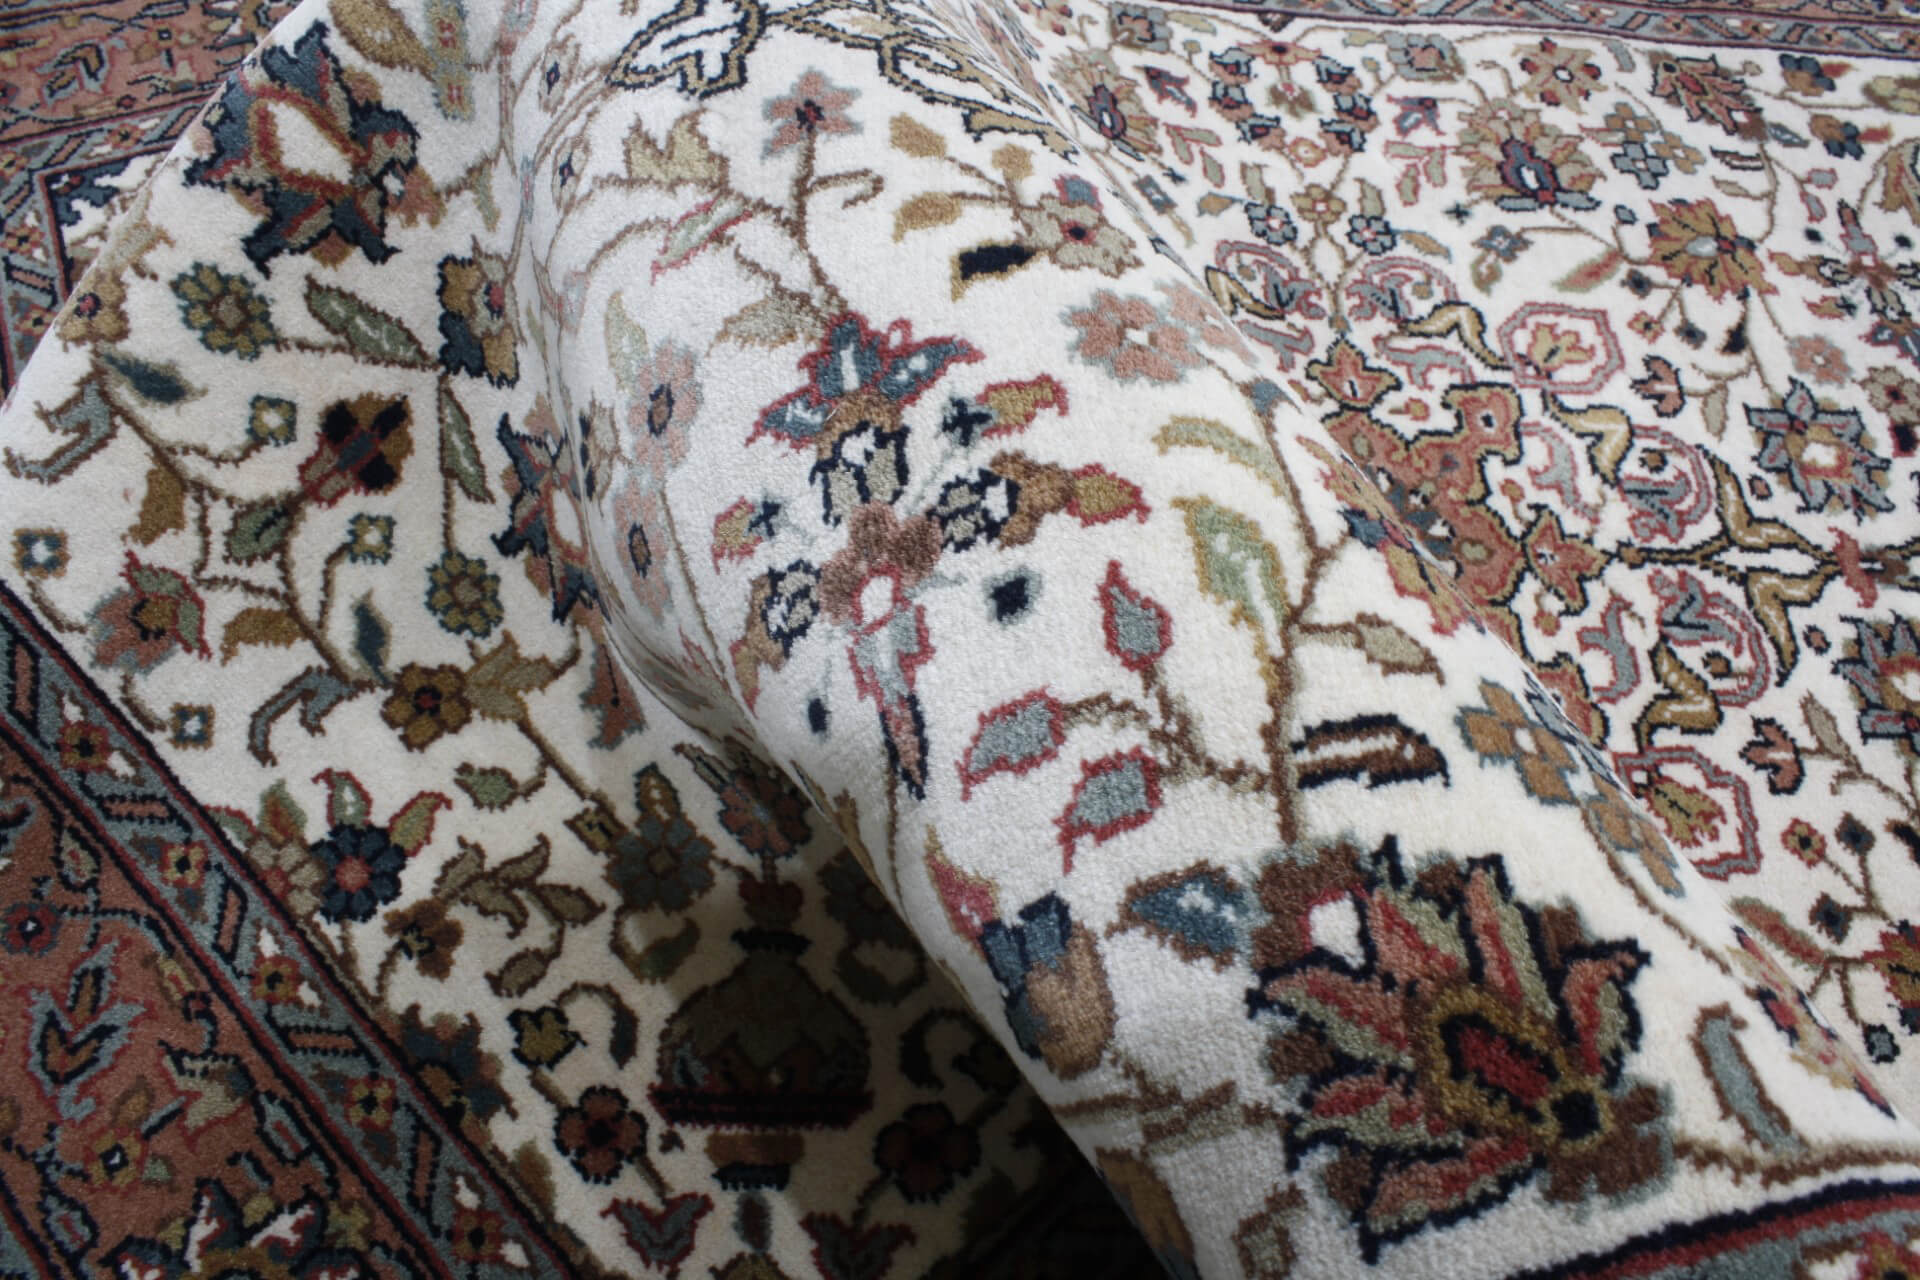 Orientální koberec Kášán Exkluziv